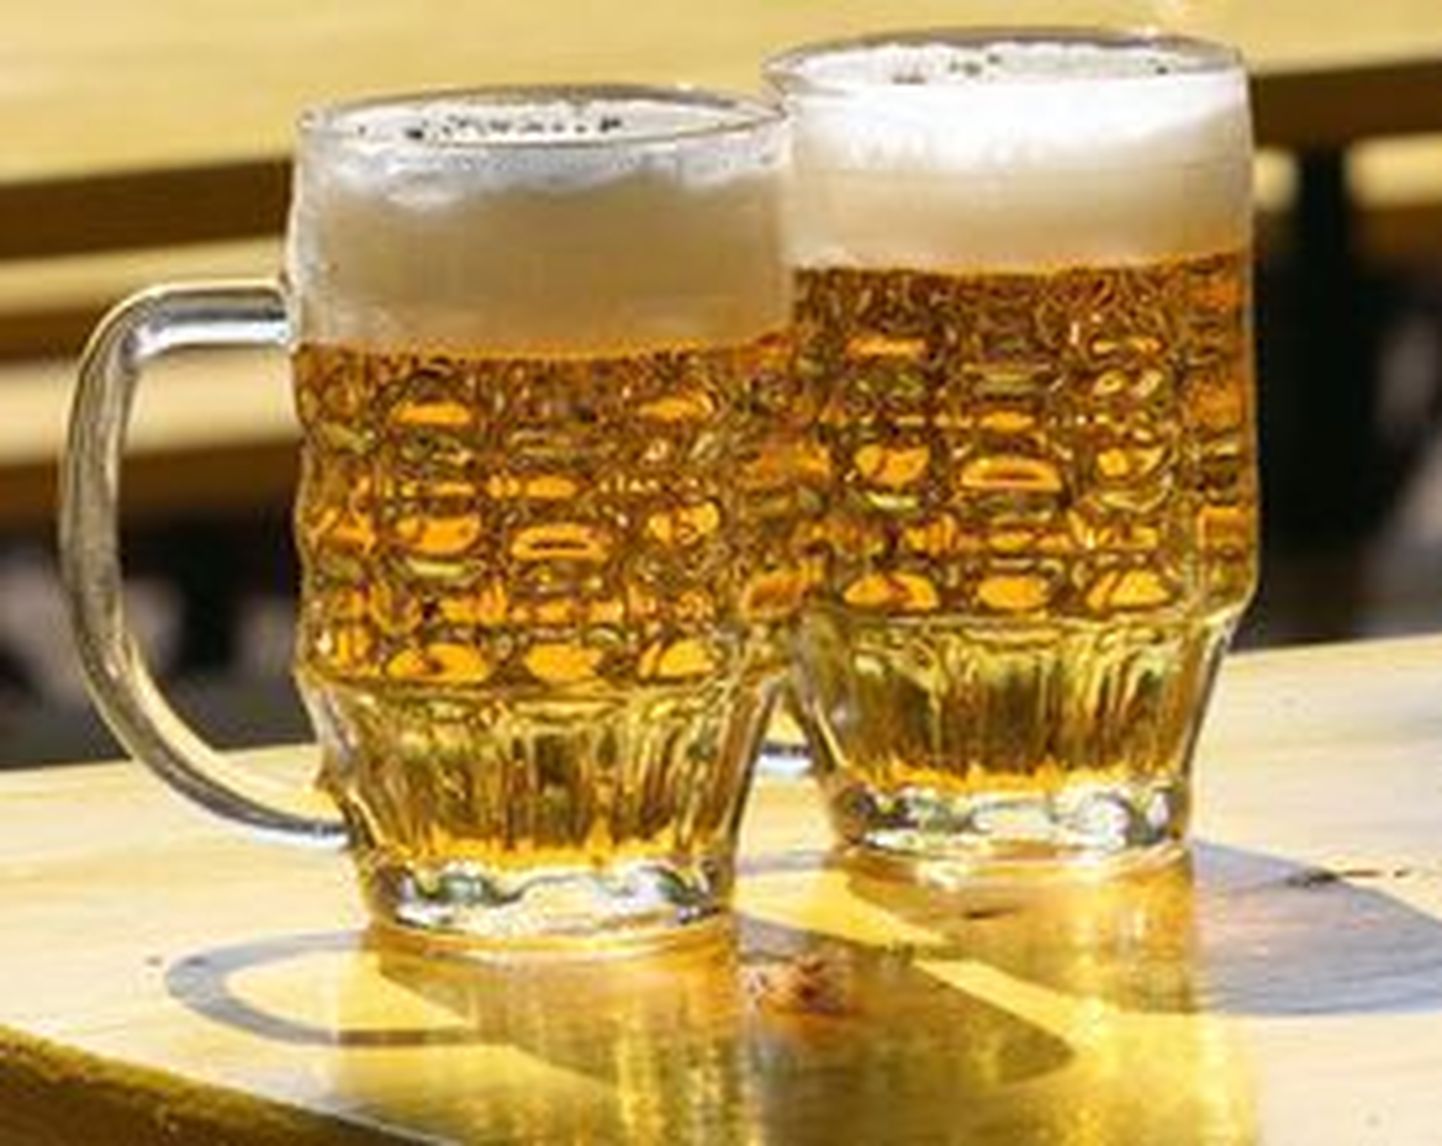 Saku õlletehas toob turule lite-tüüpi õlle.